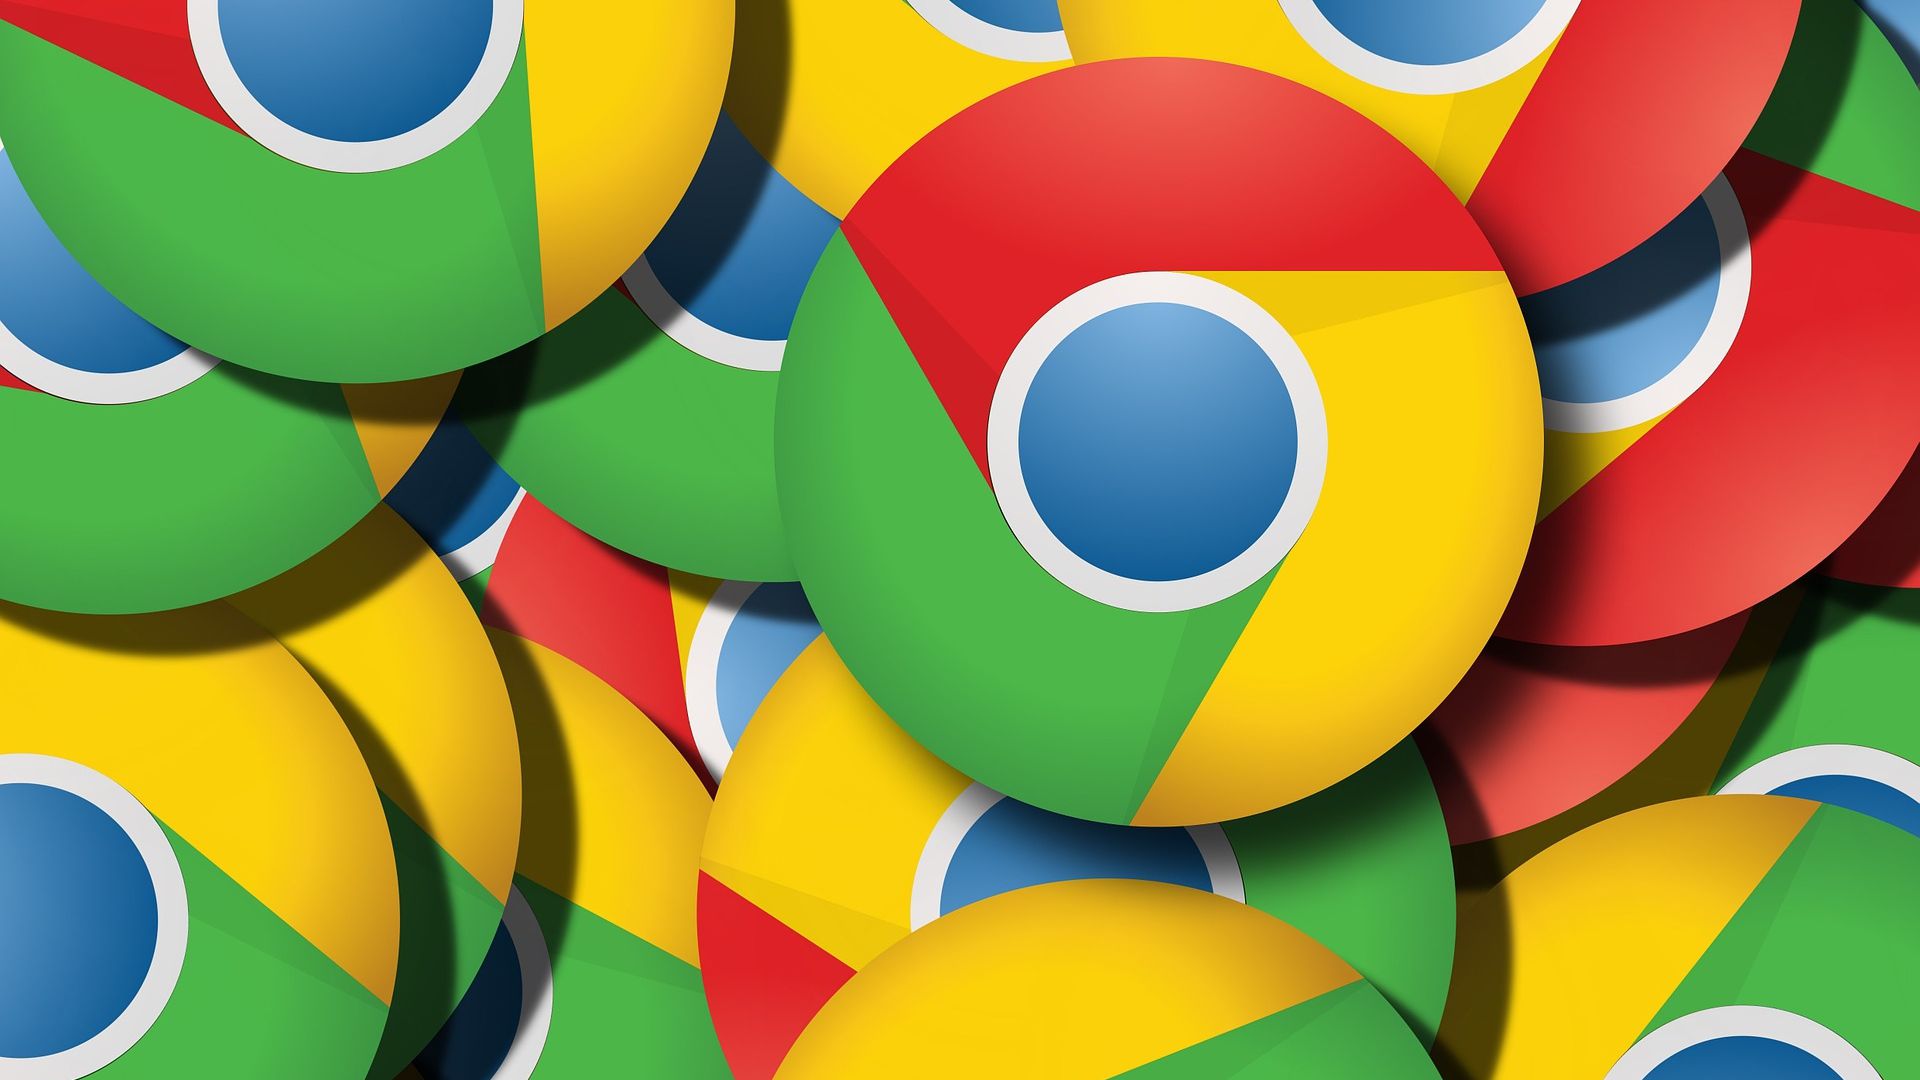 Joguinho do dinossauro do Chrome vai ganhar widget para Android - Canaltech